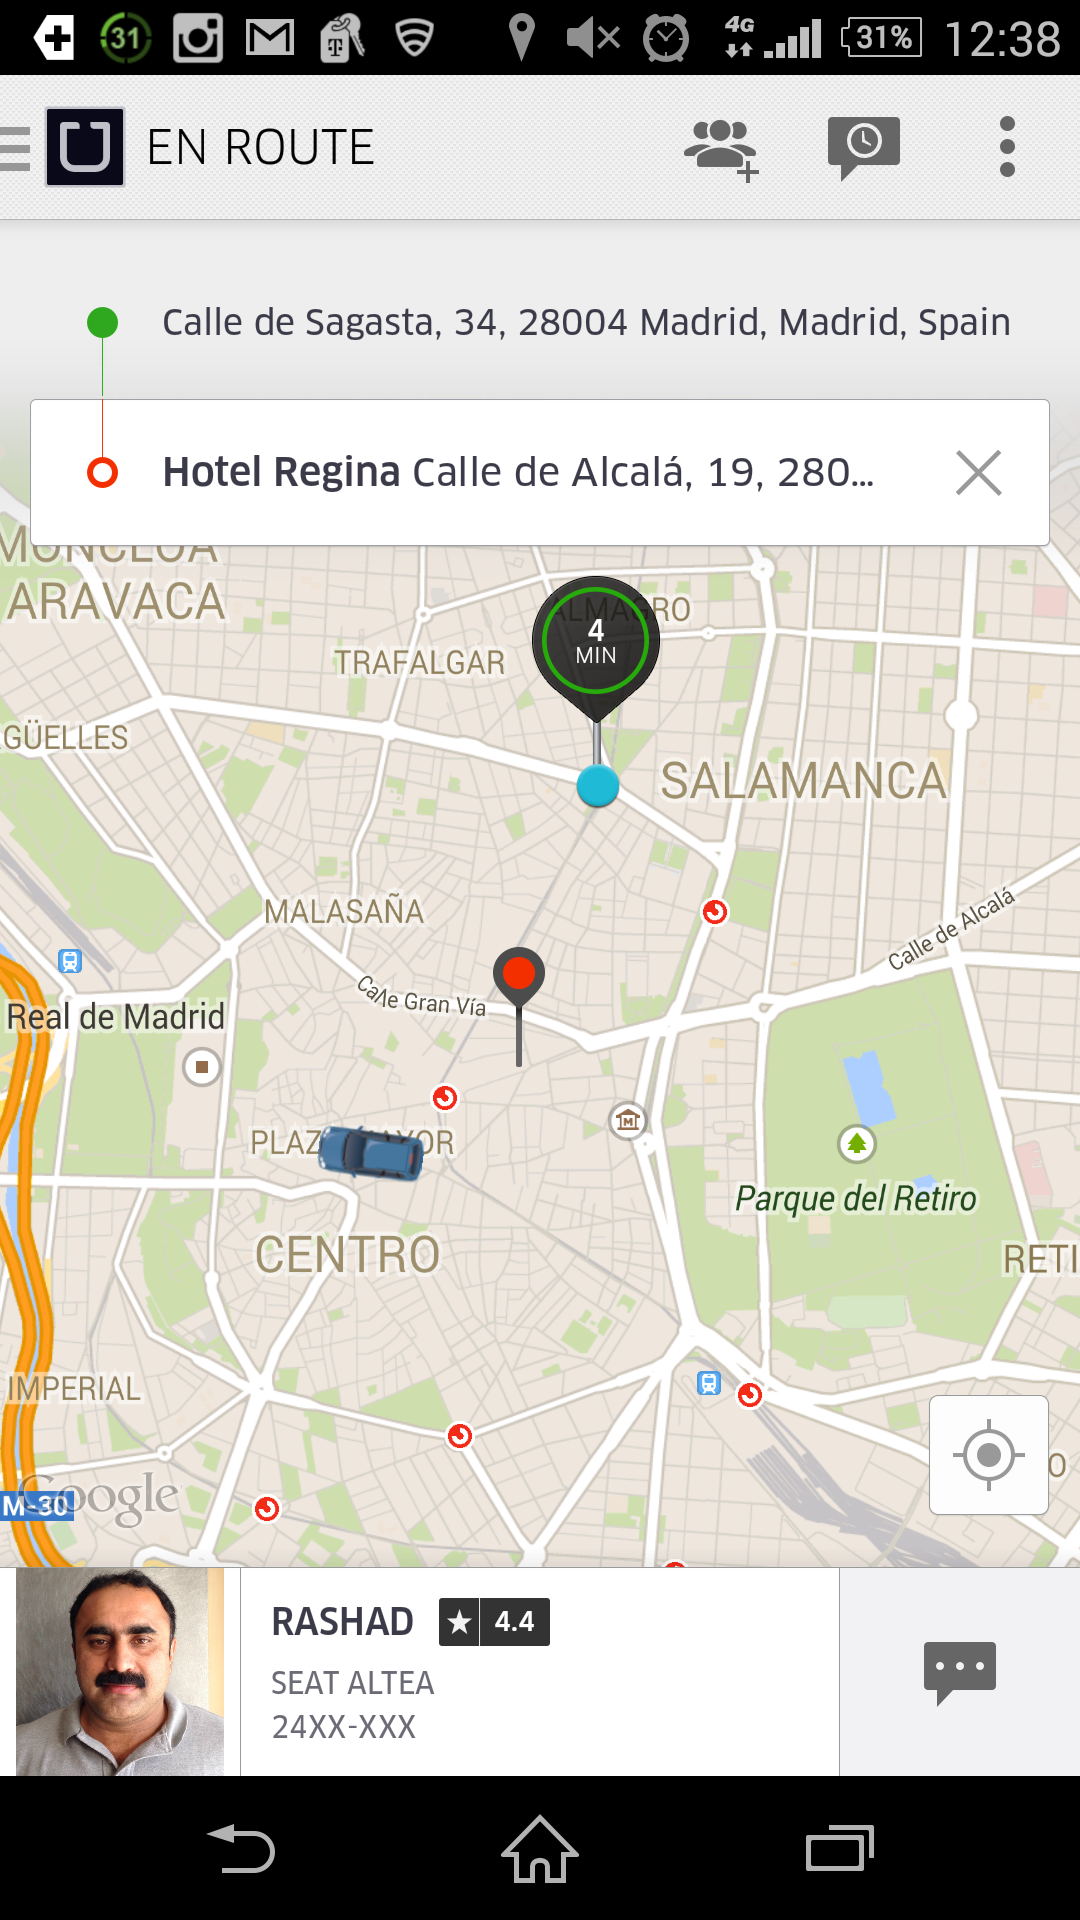 Uber Madrid